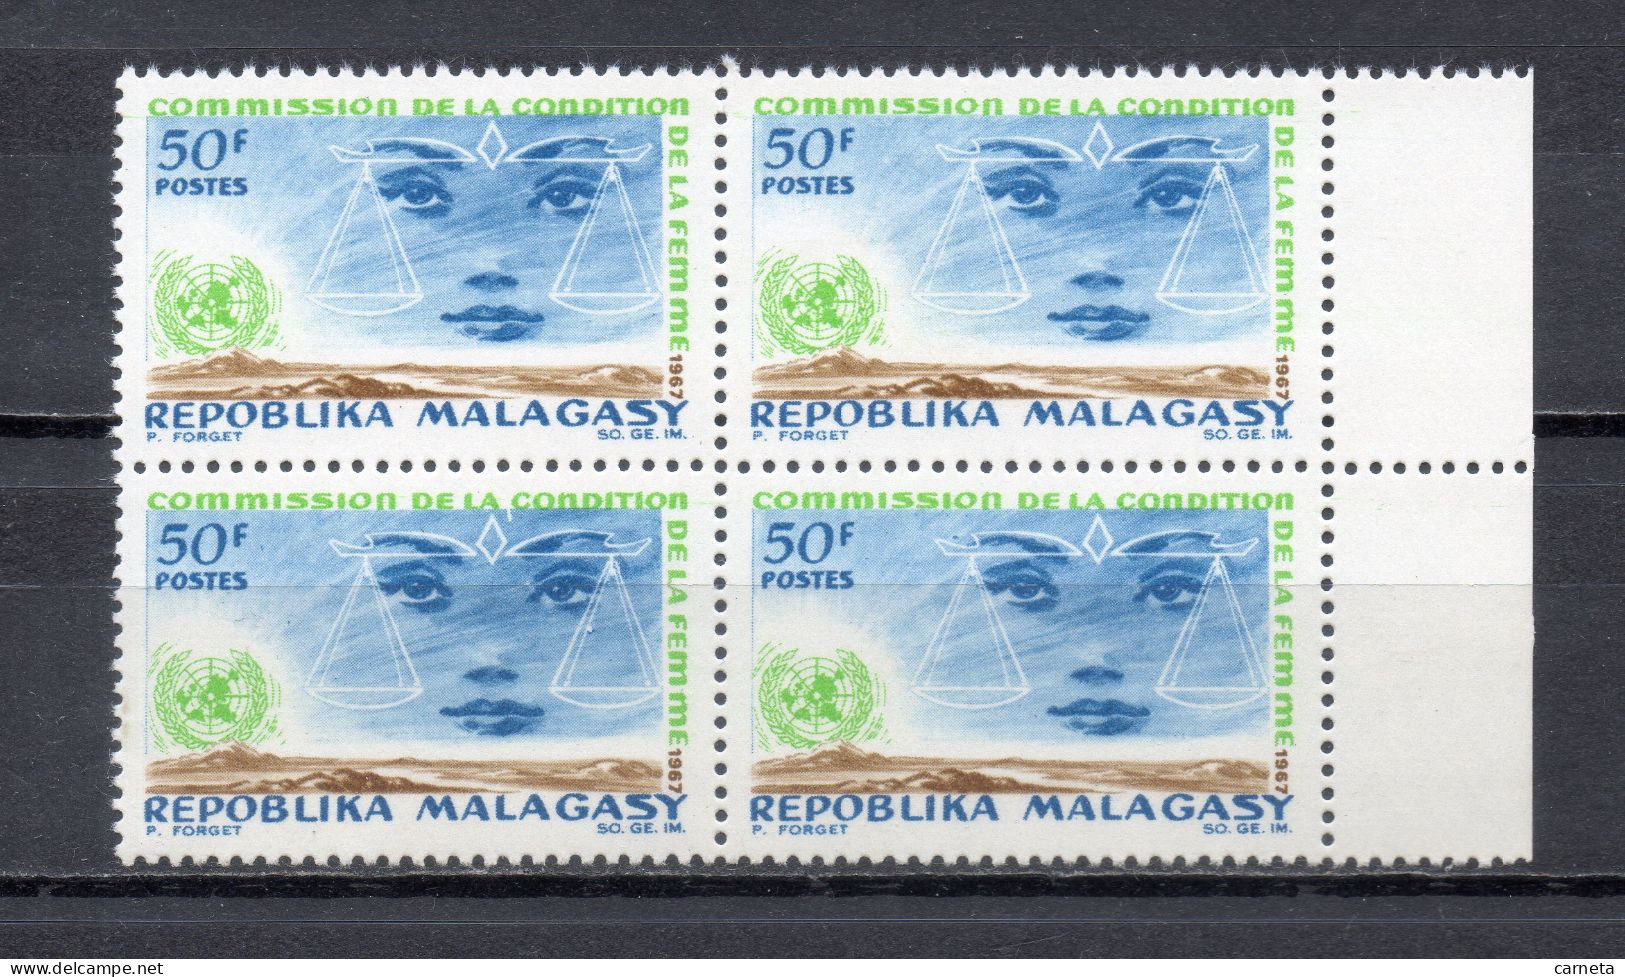 MADAGASCAR   N° 445  BLOC DE QUATRE TIMBRES  NEUF SANS CHARNIERE  COTE  4.00€   NATIONS UNIES CONDITION DE LA FEMME - Madagascar (1960-...)